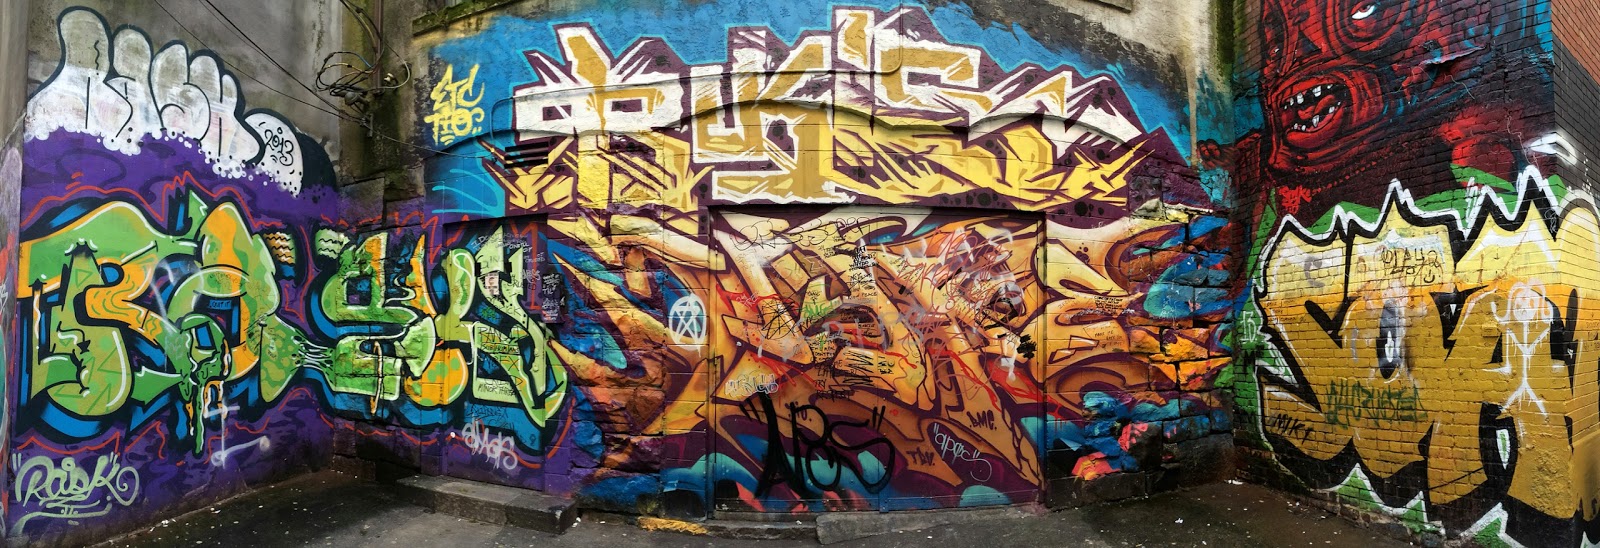 Jordan Nickel 3d Graffiti Alphabets Graffiti Art Graffiti De